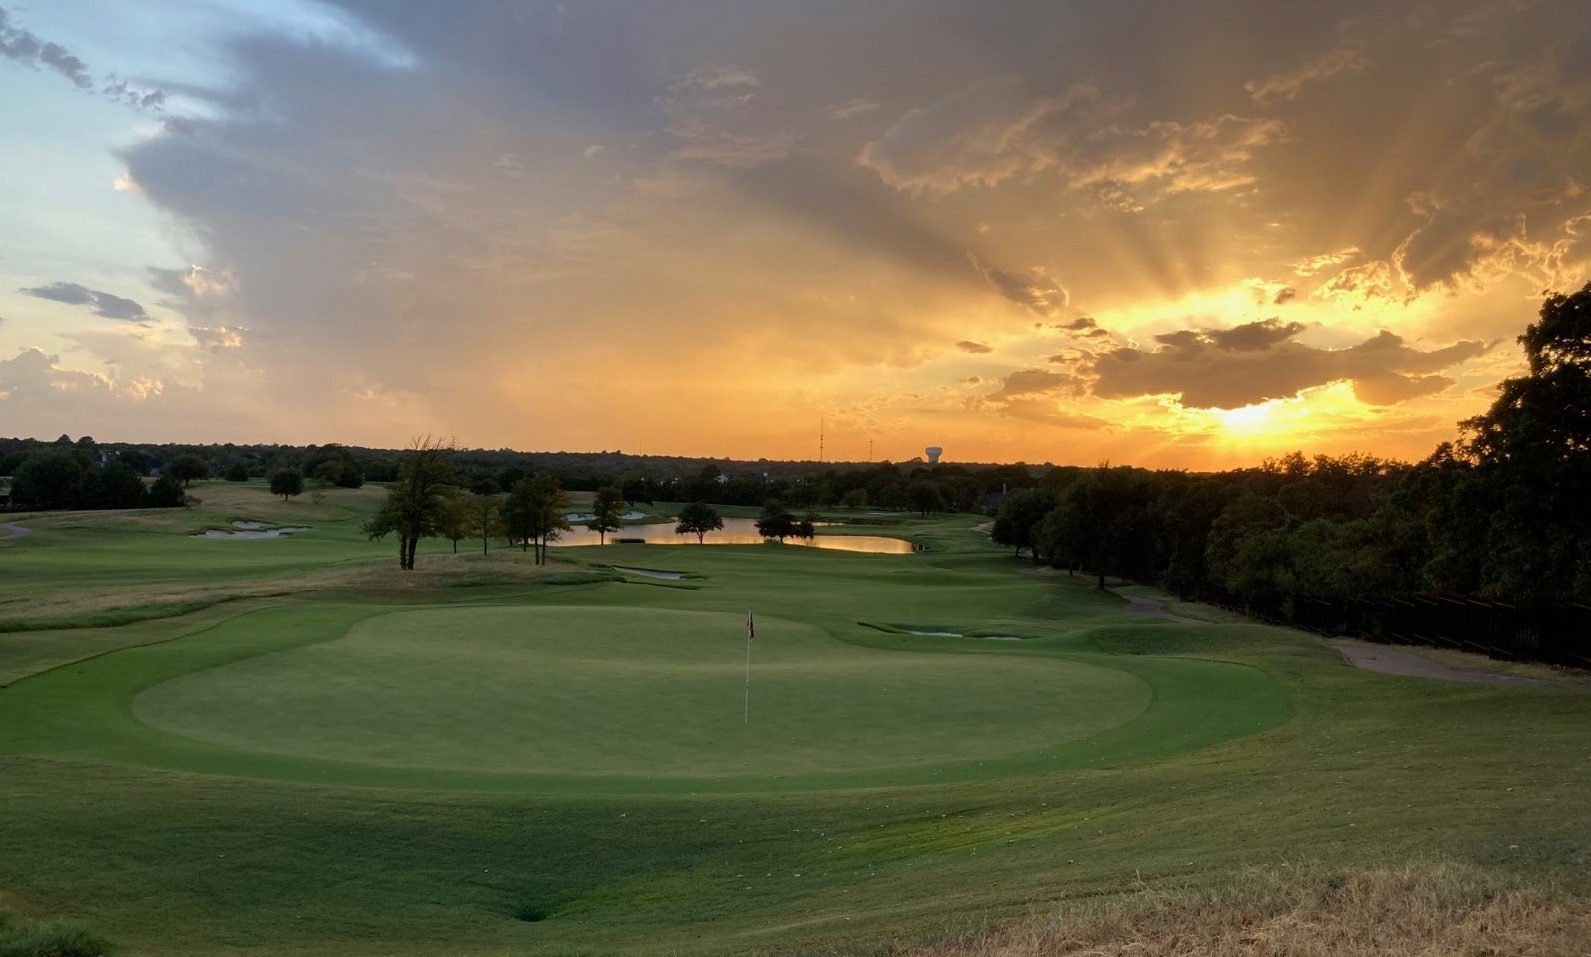 Vaquero Club golf course at sunset